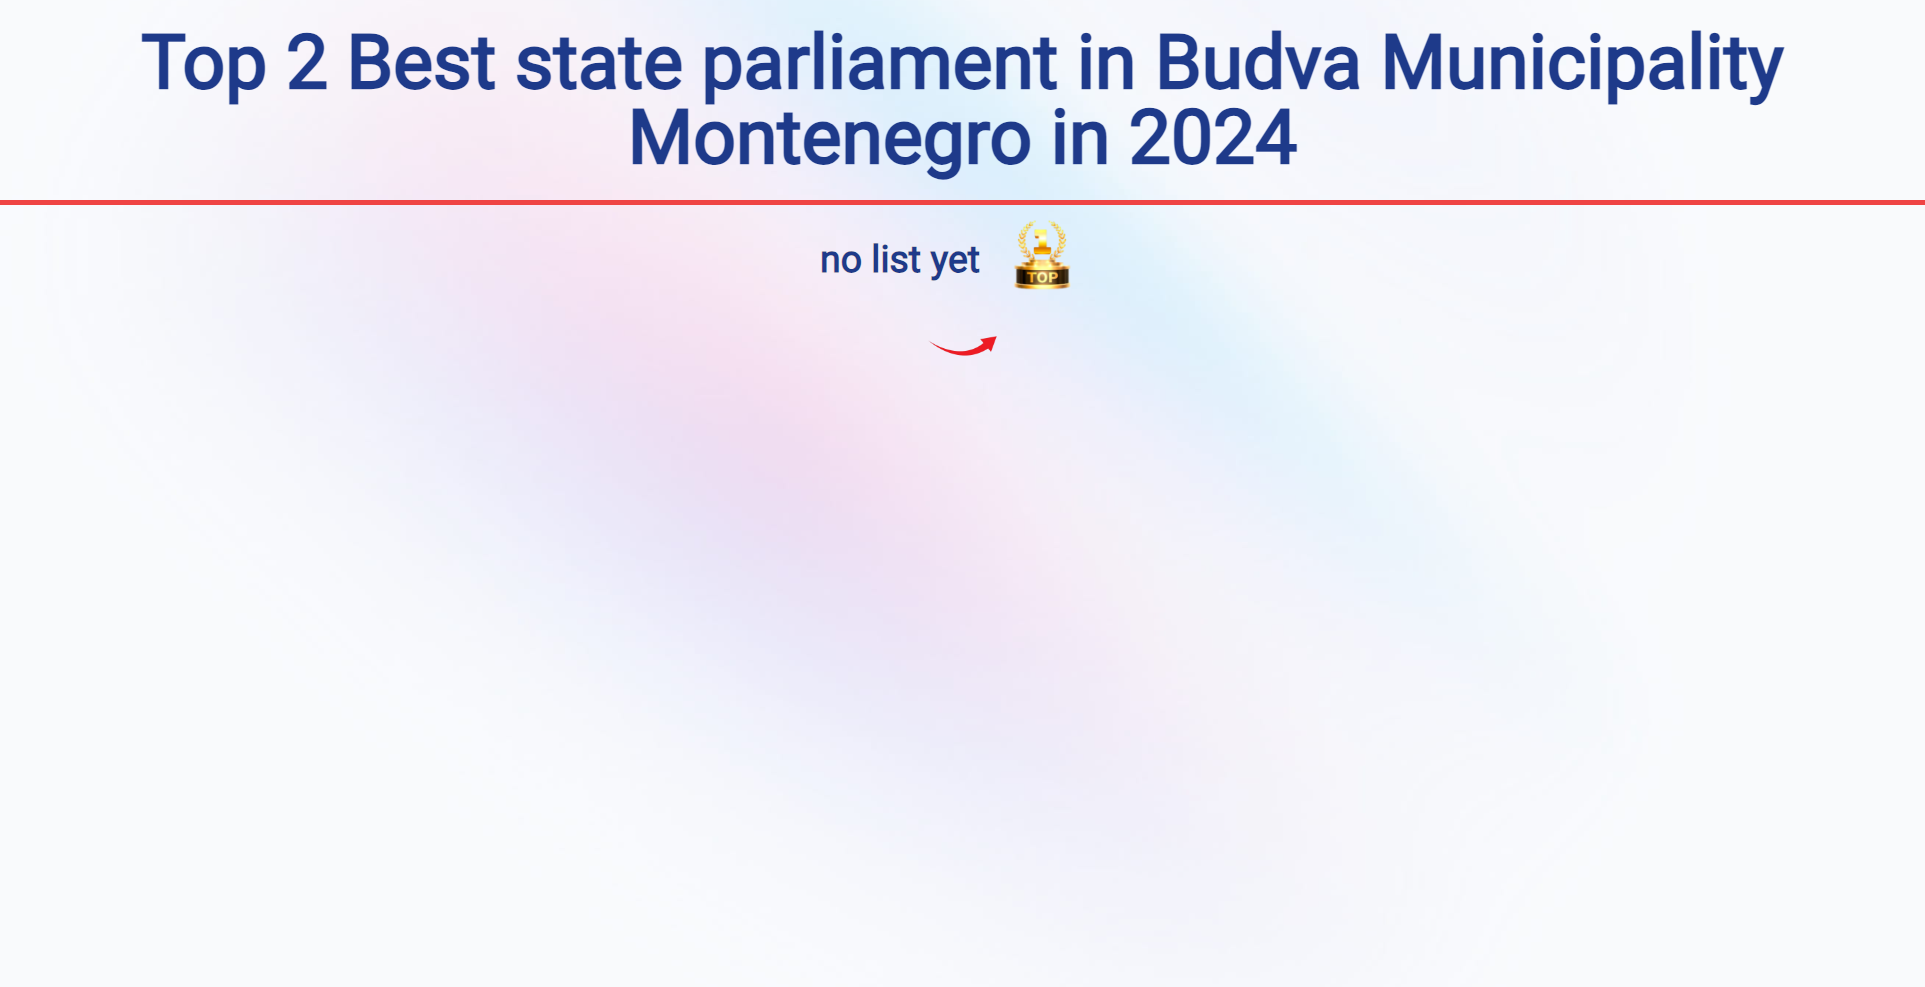 Top 2 Best state parliament in Budva Municipality Montenegro in 2024: Top 2 Best state parliament in Budva Municipality Montenegro in 2024